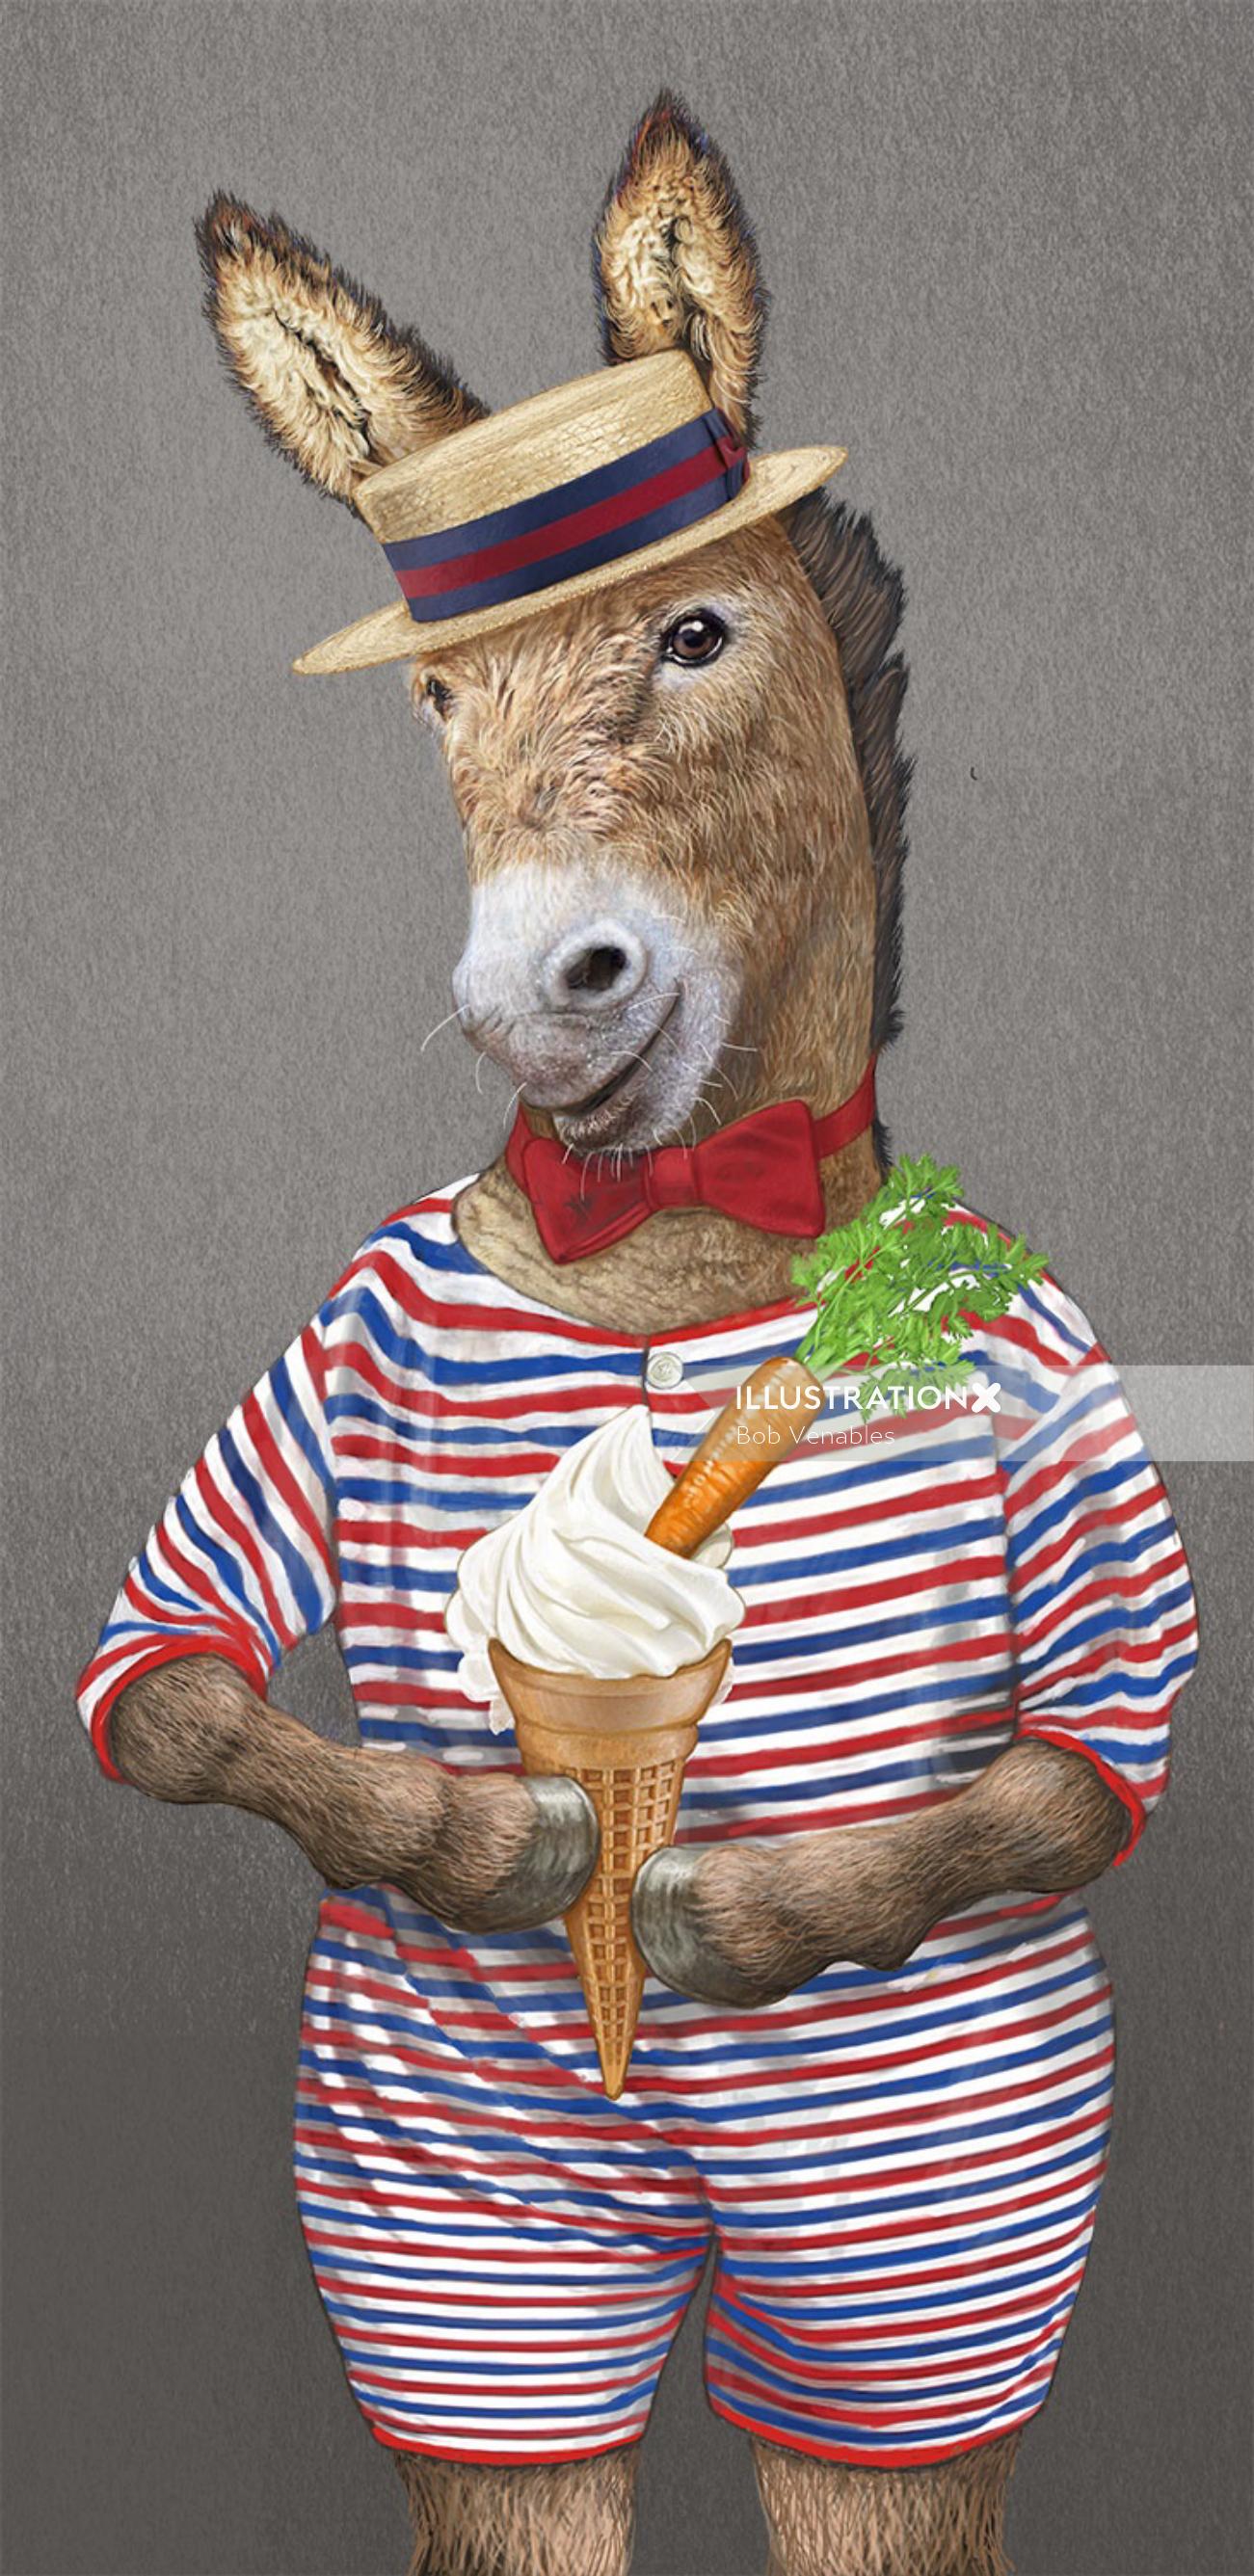 ボブ・ヴェナブルズによるアイスクリームのイラストが描かれた擬人化された馬